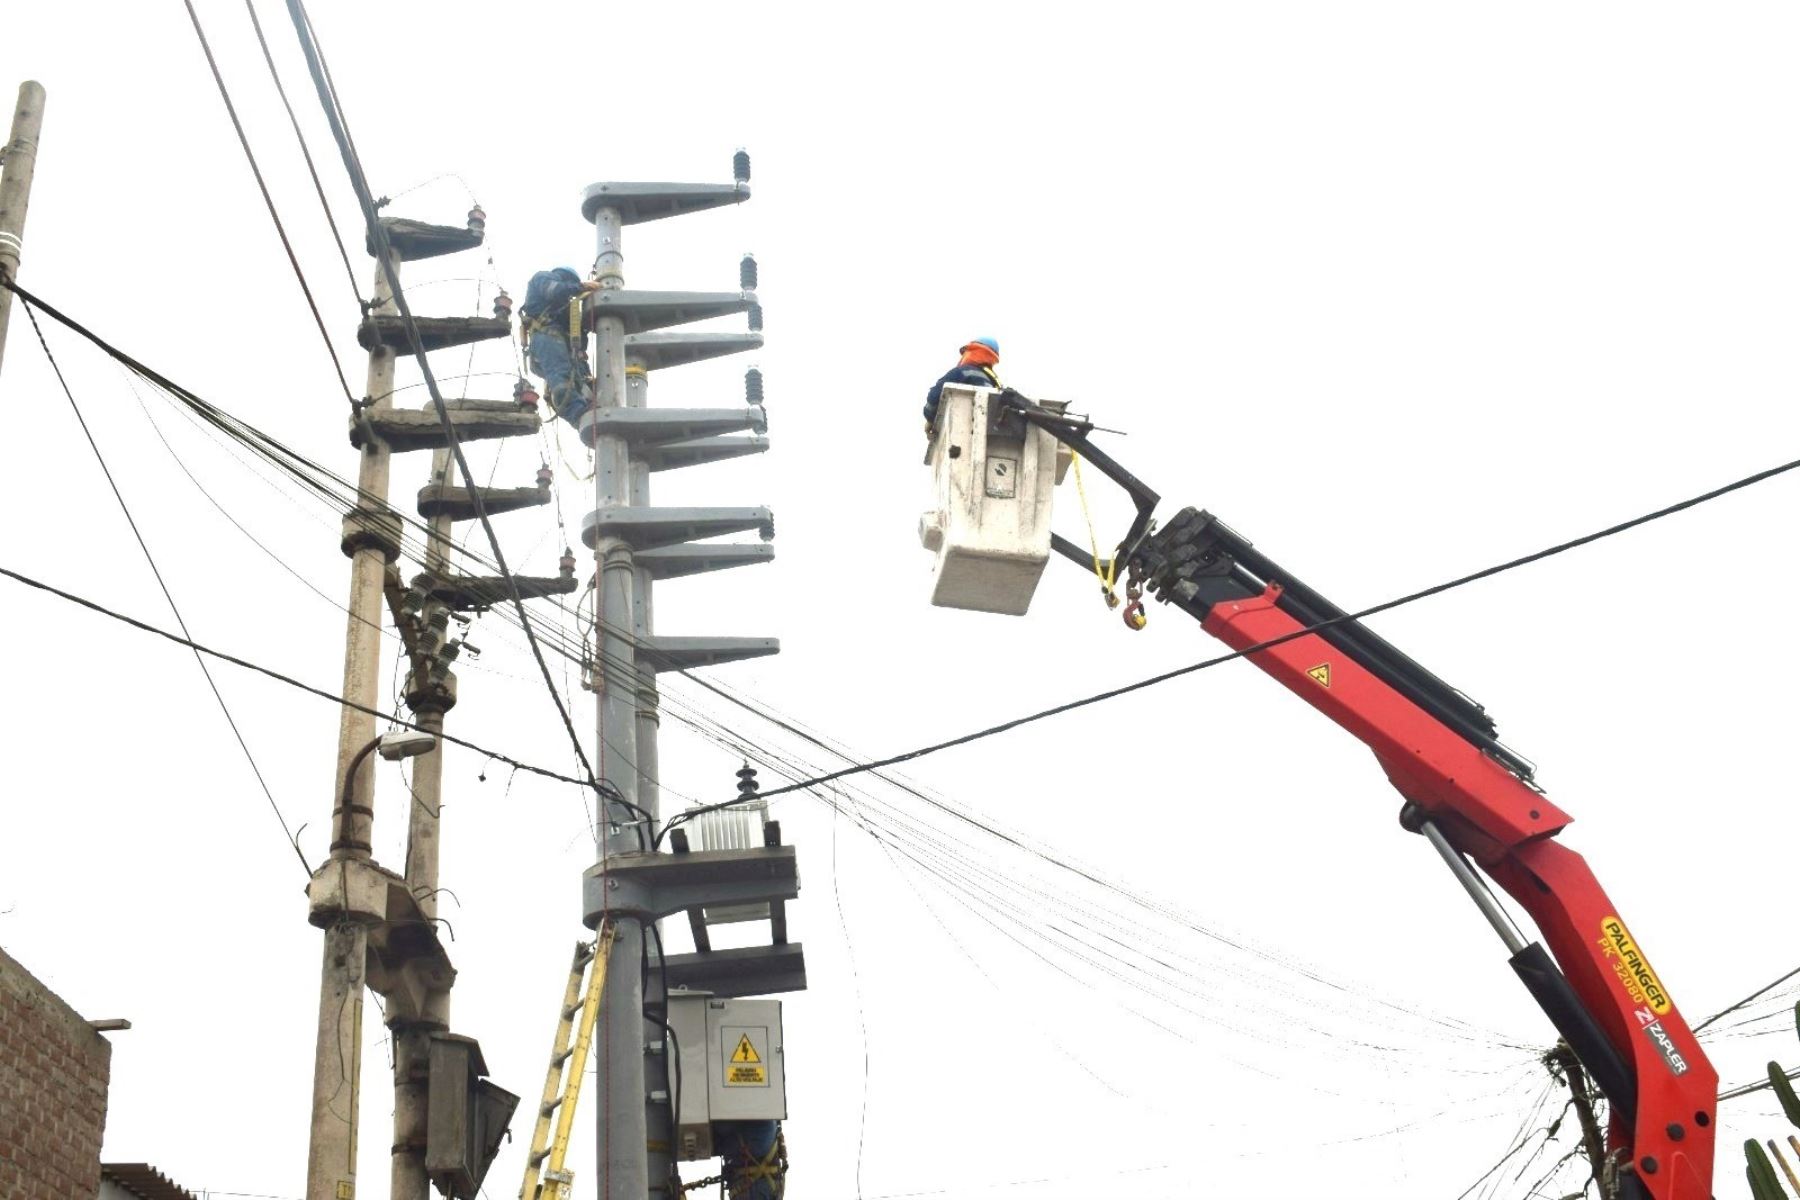 Diversos sectores de la ciudad de Trujillo, capital de la región La Libertad, se verán afectados este domingo 15 por el anunciado corte de energía eléctrica por trabajos de mantenimiento.